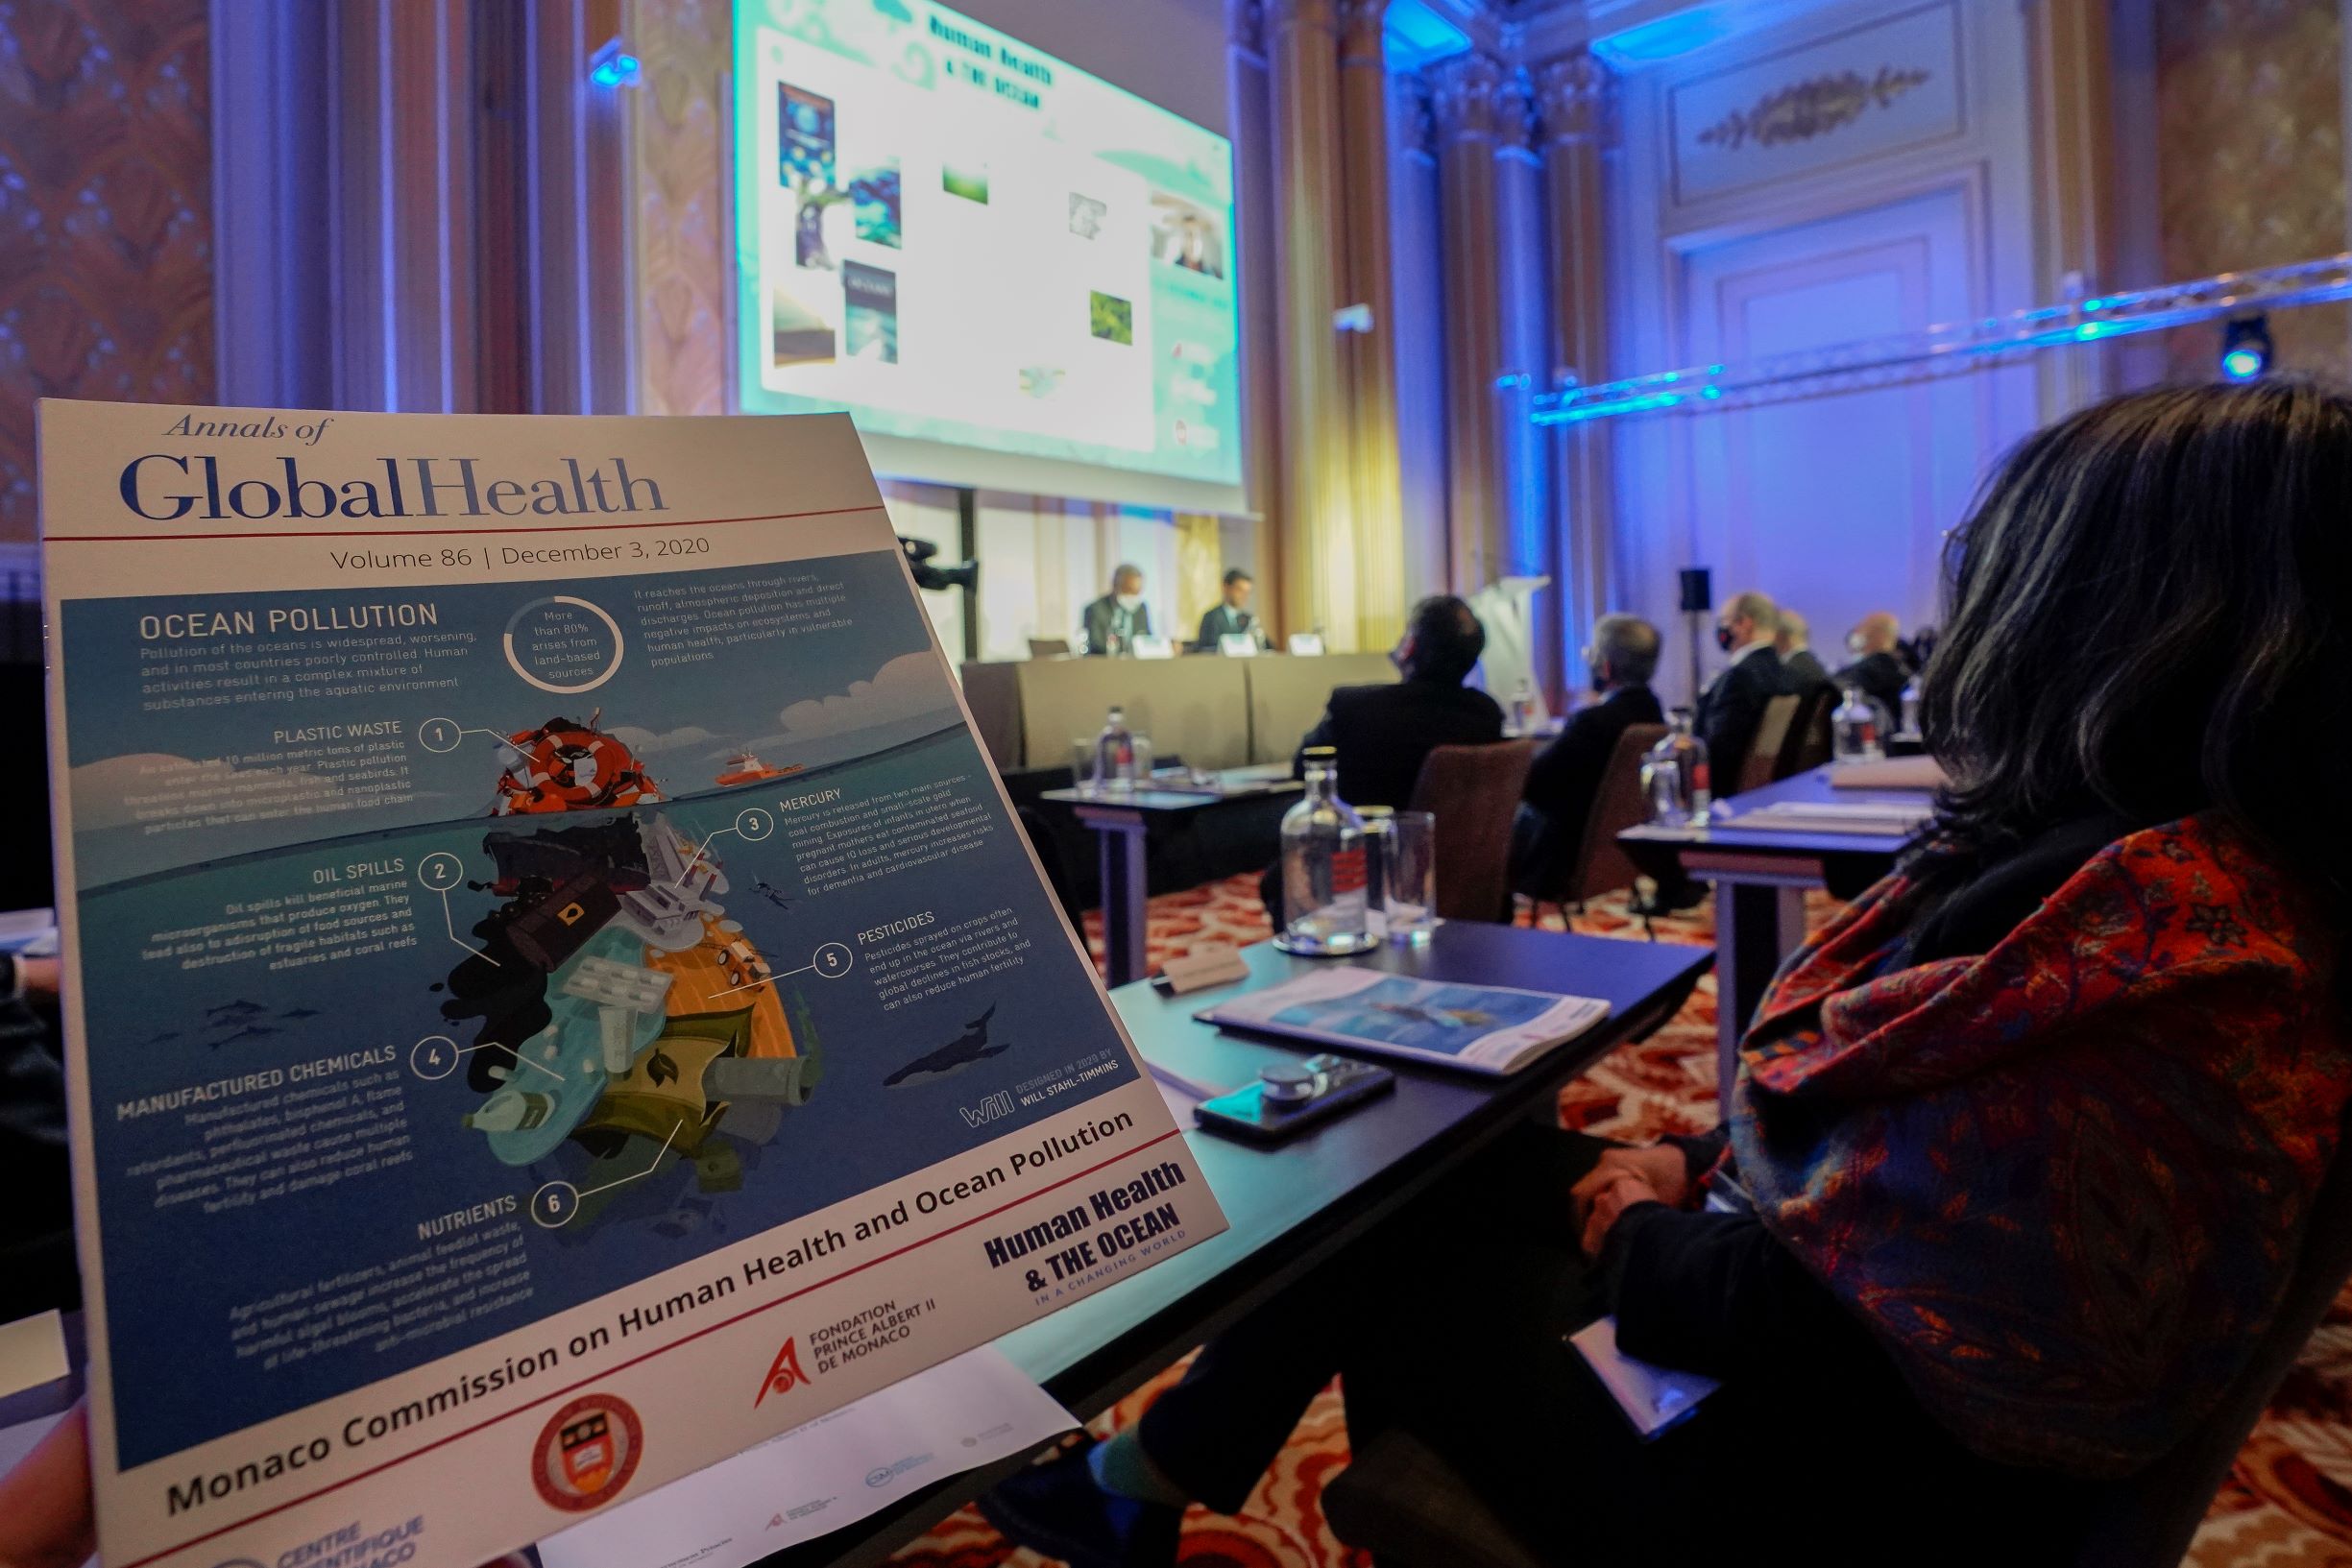 Rapport Commission de Monaco sur la Santé Humaine et la Pollution des Océans. Direction de la Communication Michael Alesi